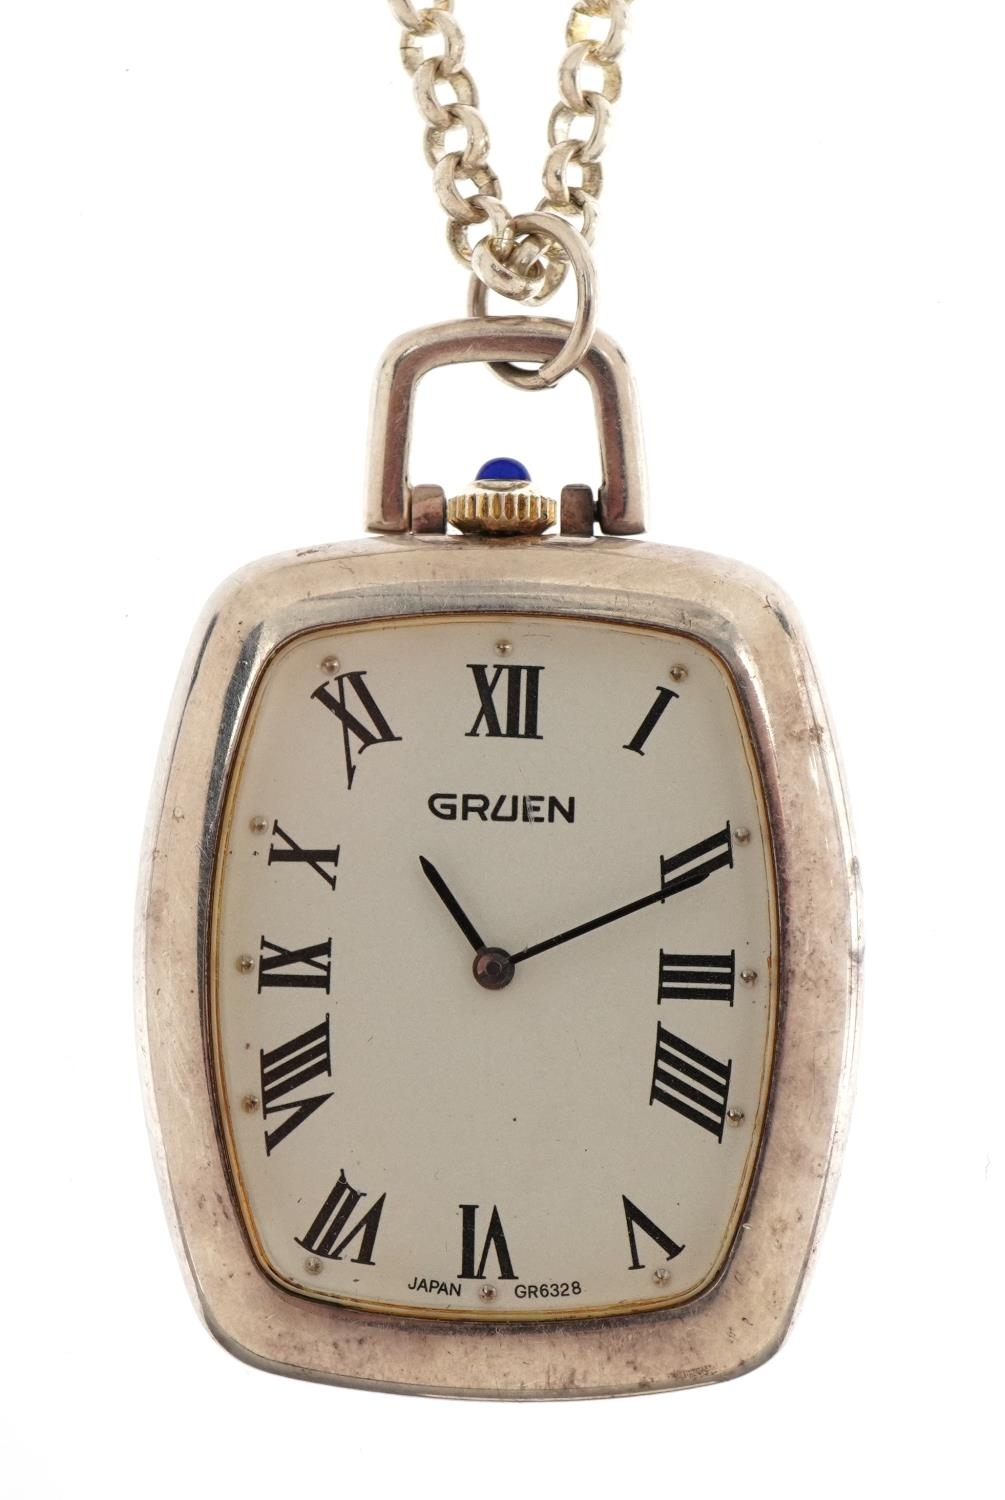 Gruen, gentlemen's open face pocket watch on a white metal necklace, 32mm wide, 49.2g